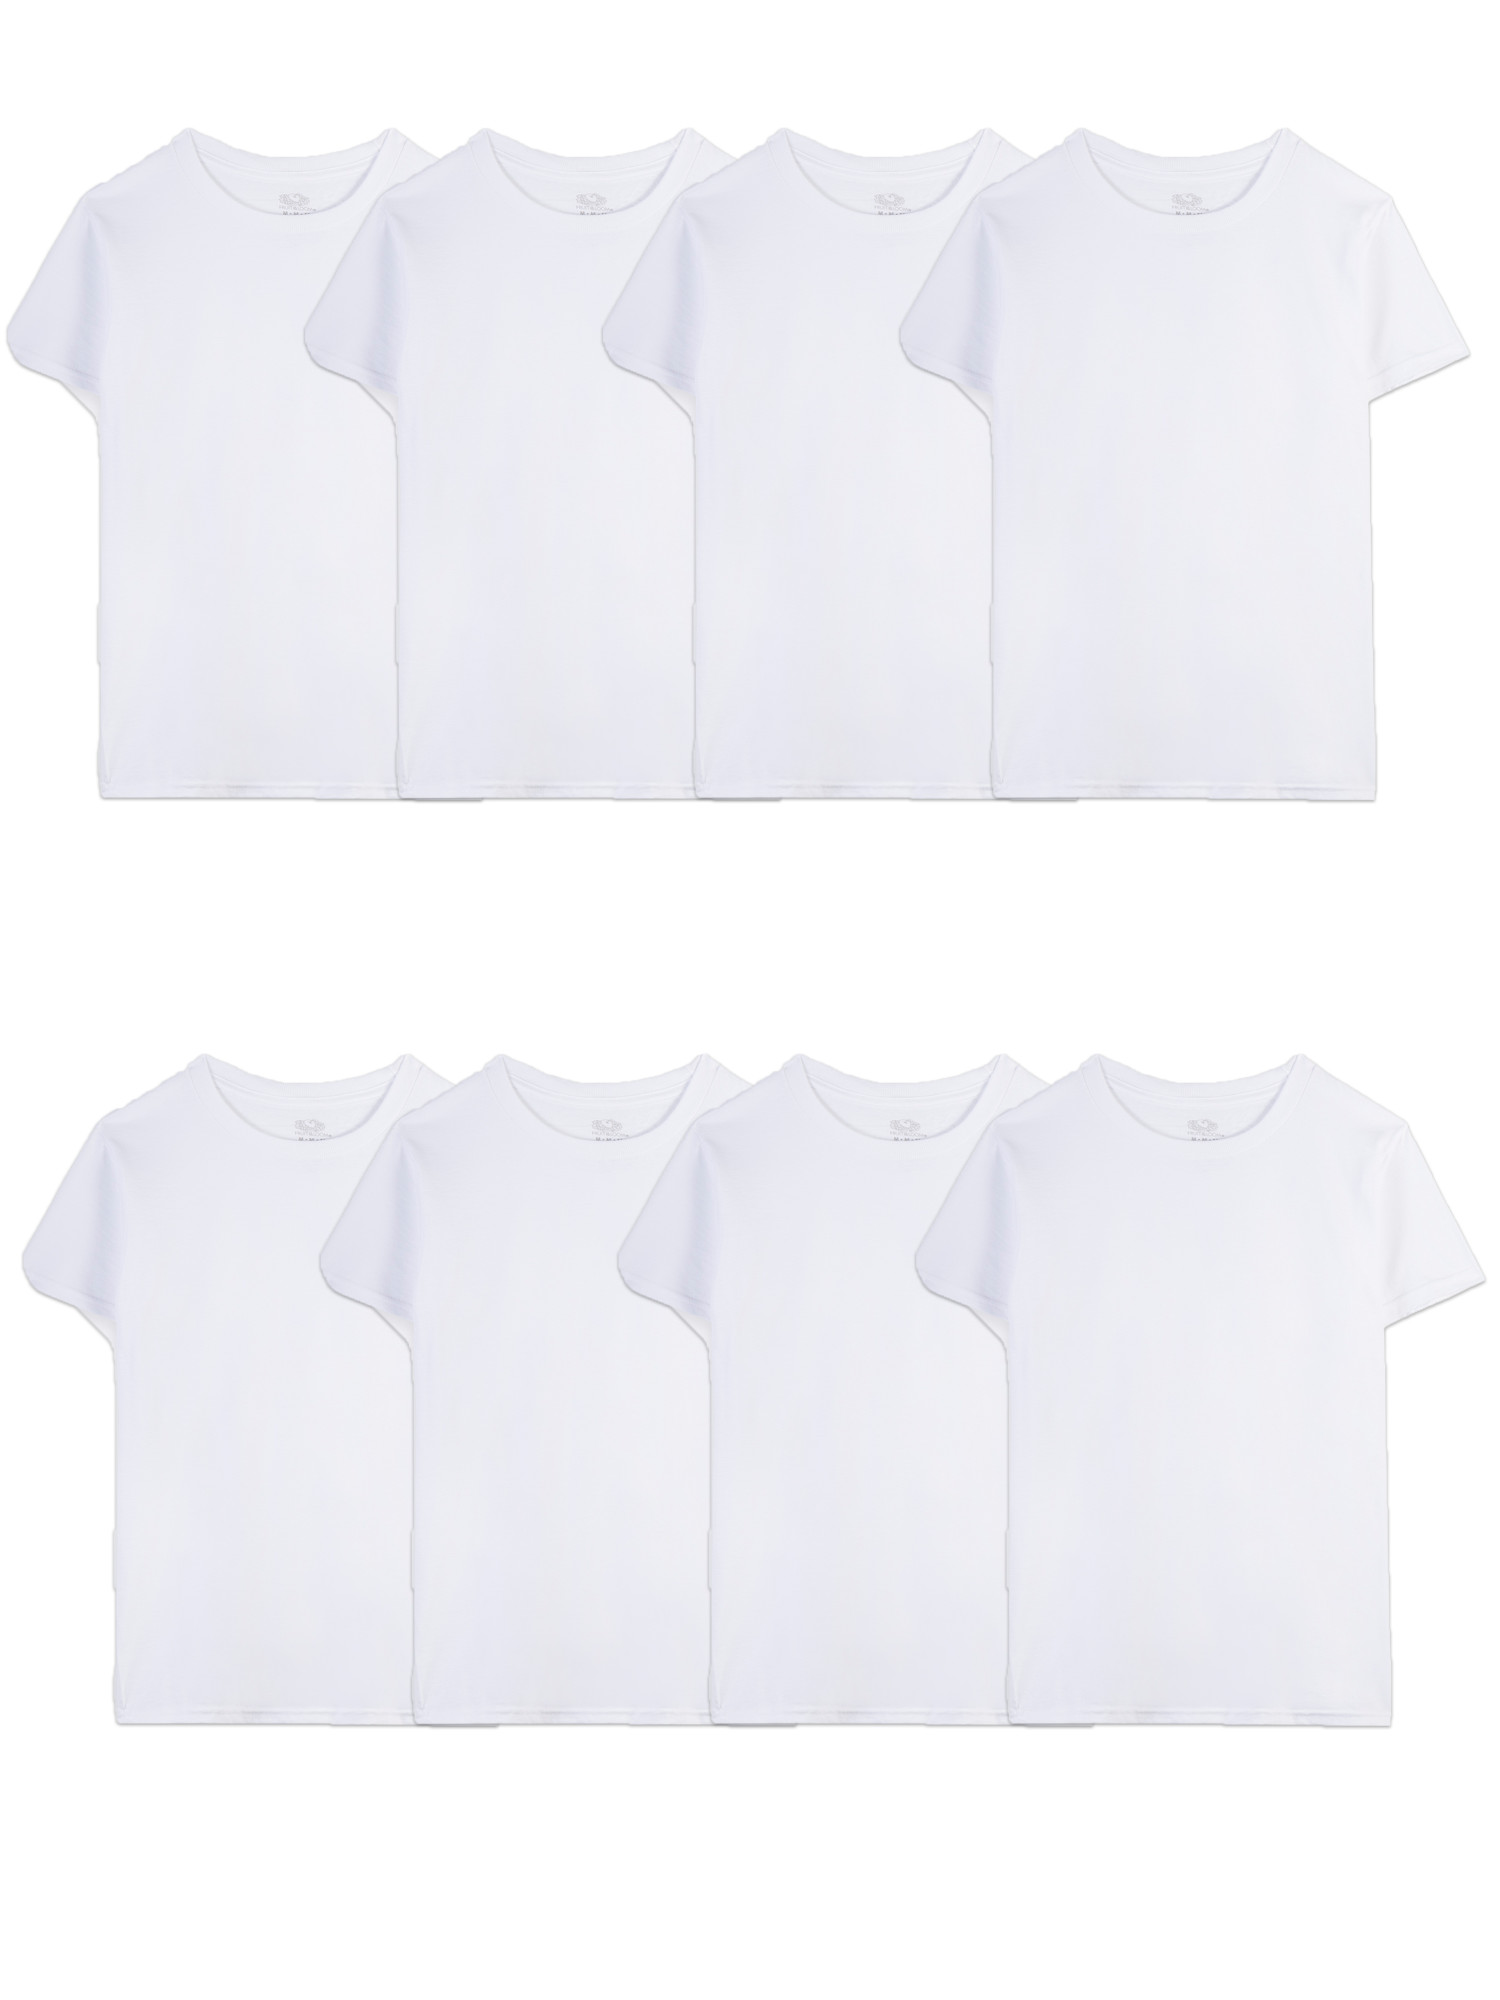 Fruit of the Loom Boys' White Crew Undershirts, 5+3 Bonus Pack - image 1 of 8